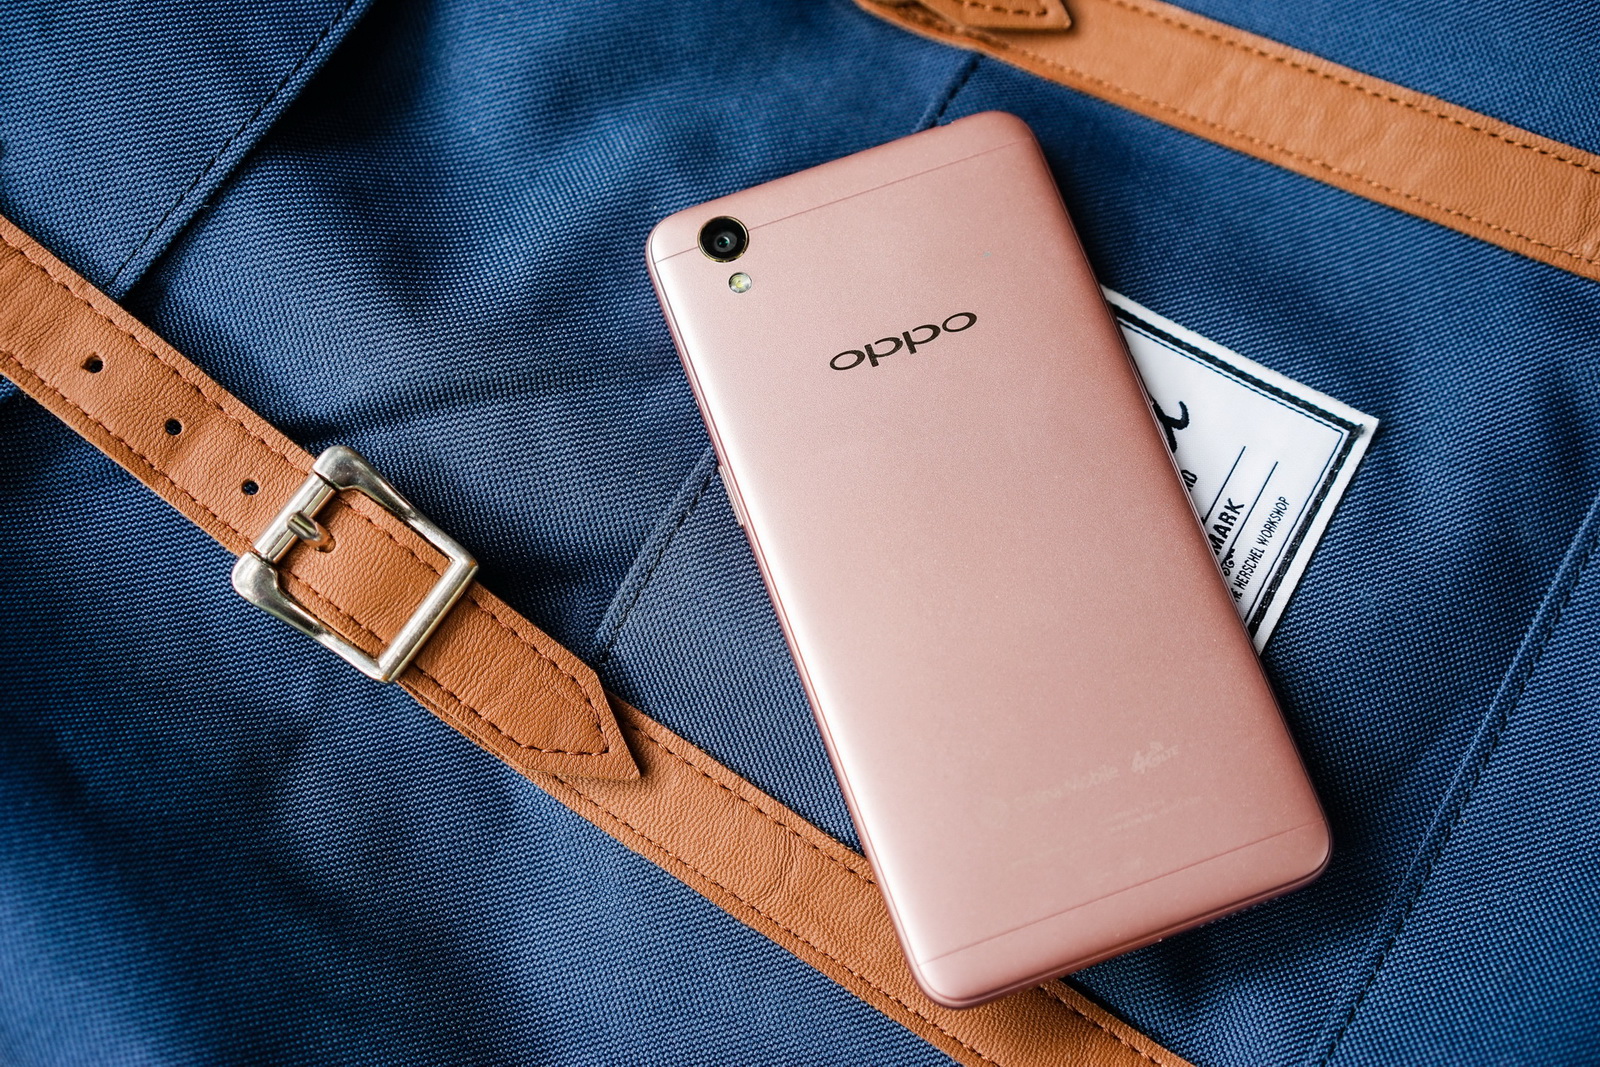 OPPO A系列产品新手机A37 享有恬静美一刻